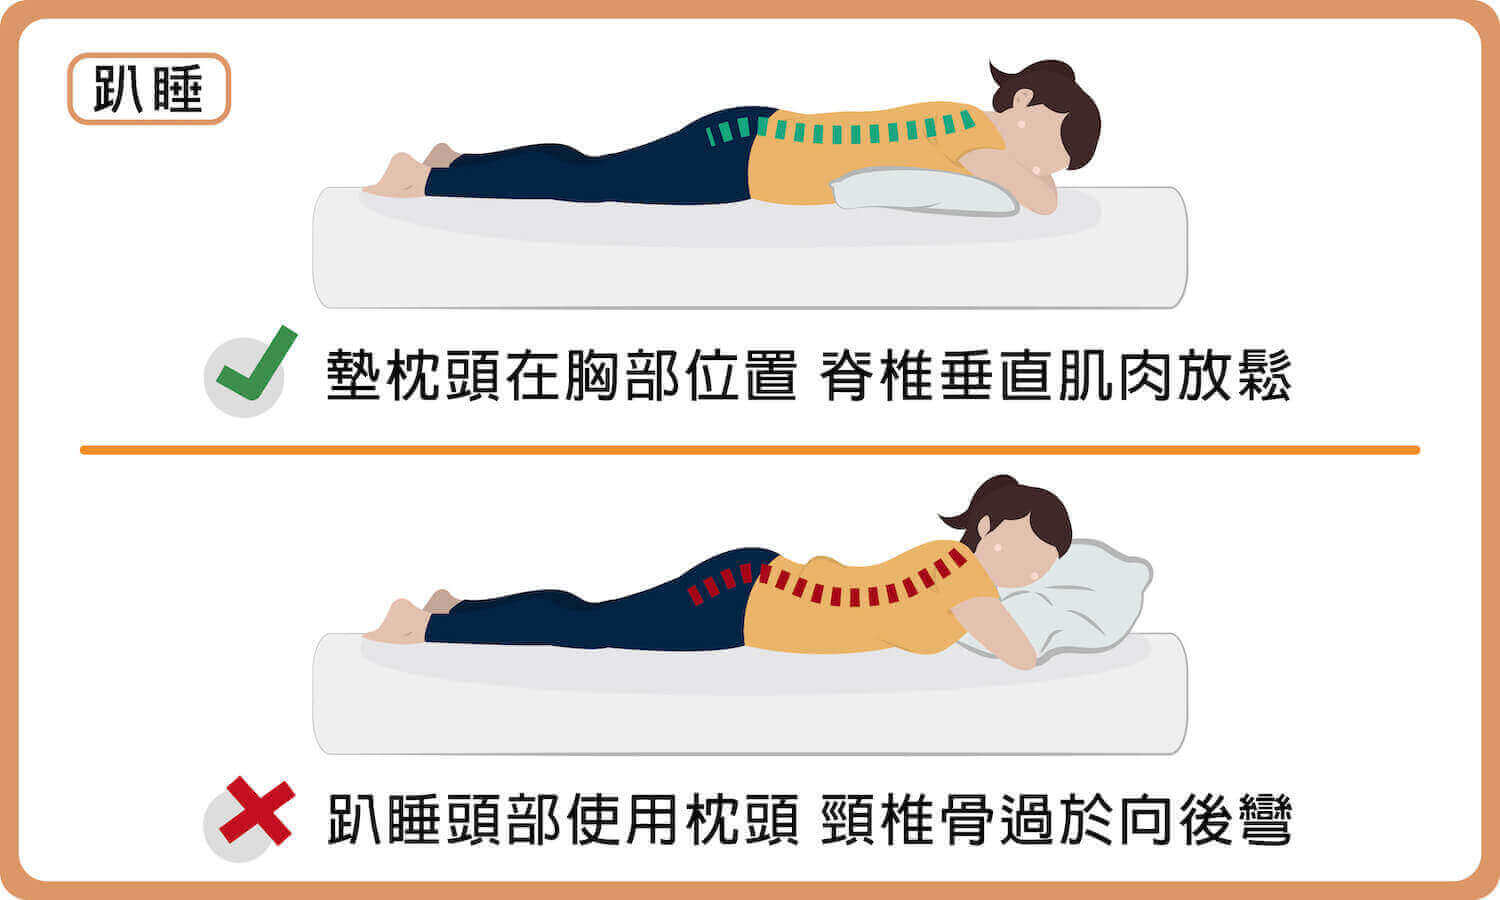 趴睡時可以在胸部位置墊枕頭或毛巾，幫助脊椎肌肉放鬆；趴睡時頭部不要睡枕頭，以免頸椎骨過於向後彎、脊椎受到壓迫。